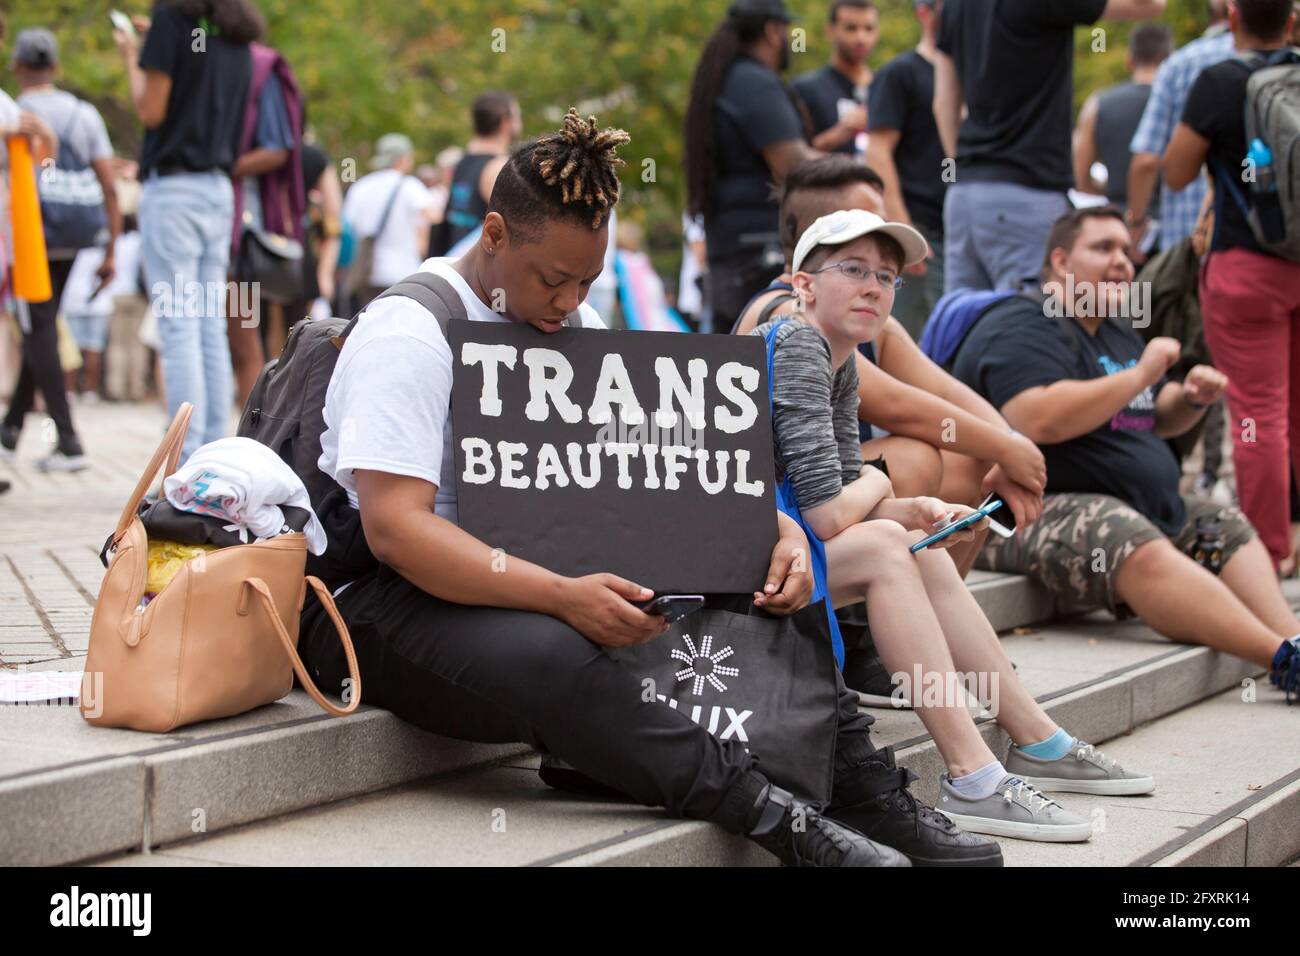 28 septembre 2019 - Washington, DC Etats-Unis: Les militants des droits transgenres et la famille se réunissent pour sensibiliser la population lors de la Marche nationale de visibilité transgenre Banque D'Images